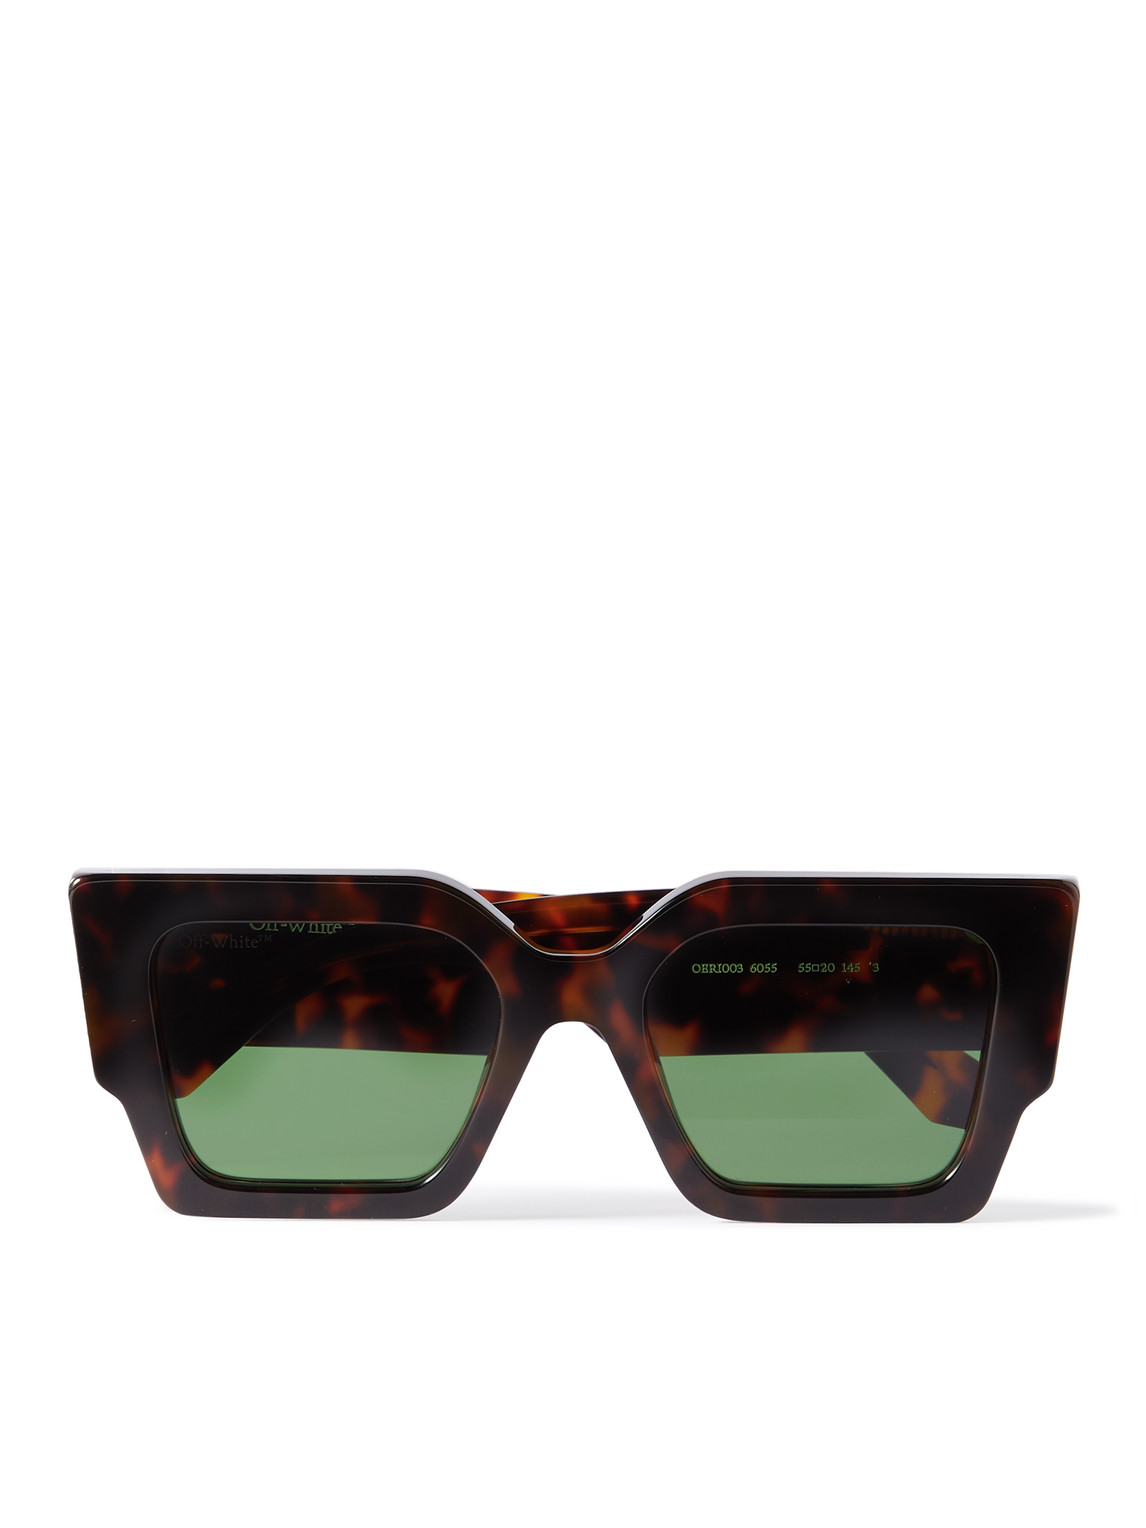 Off-White - Catalina Square-Frame Tortoiseshell Acetate Sunglasses - Men - Tortoiseshell von Off-White